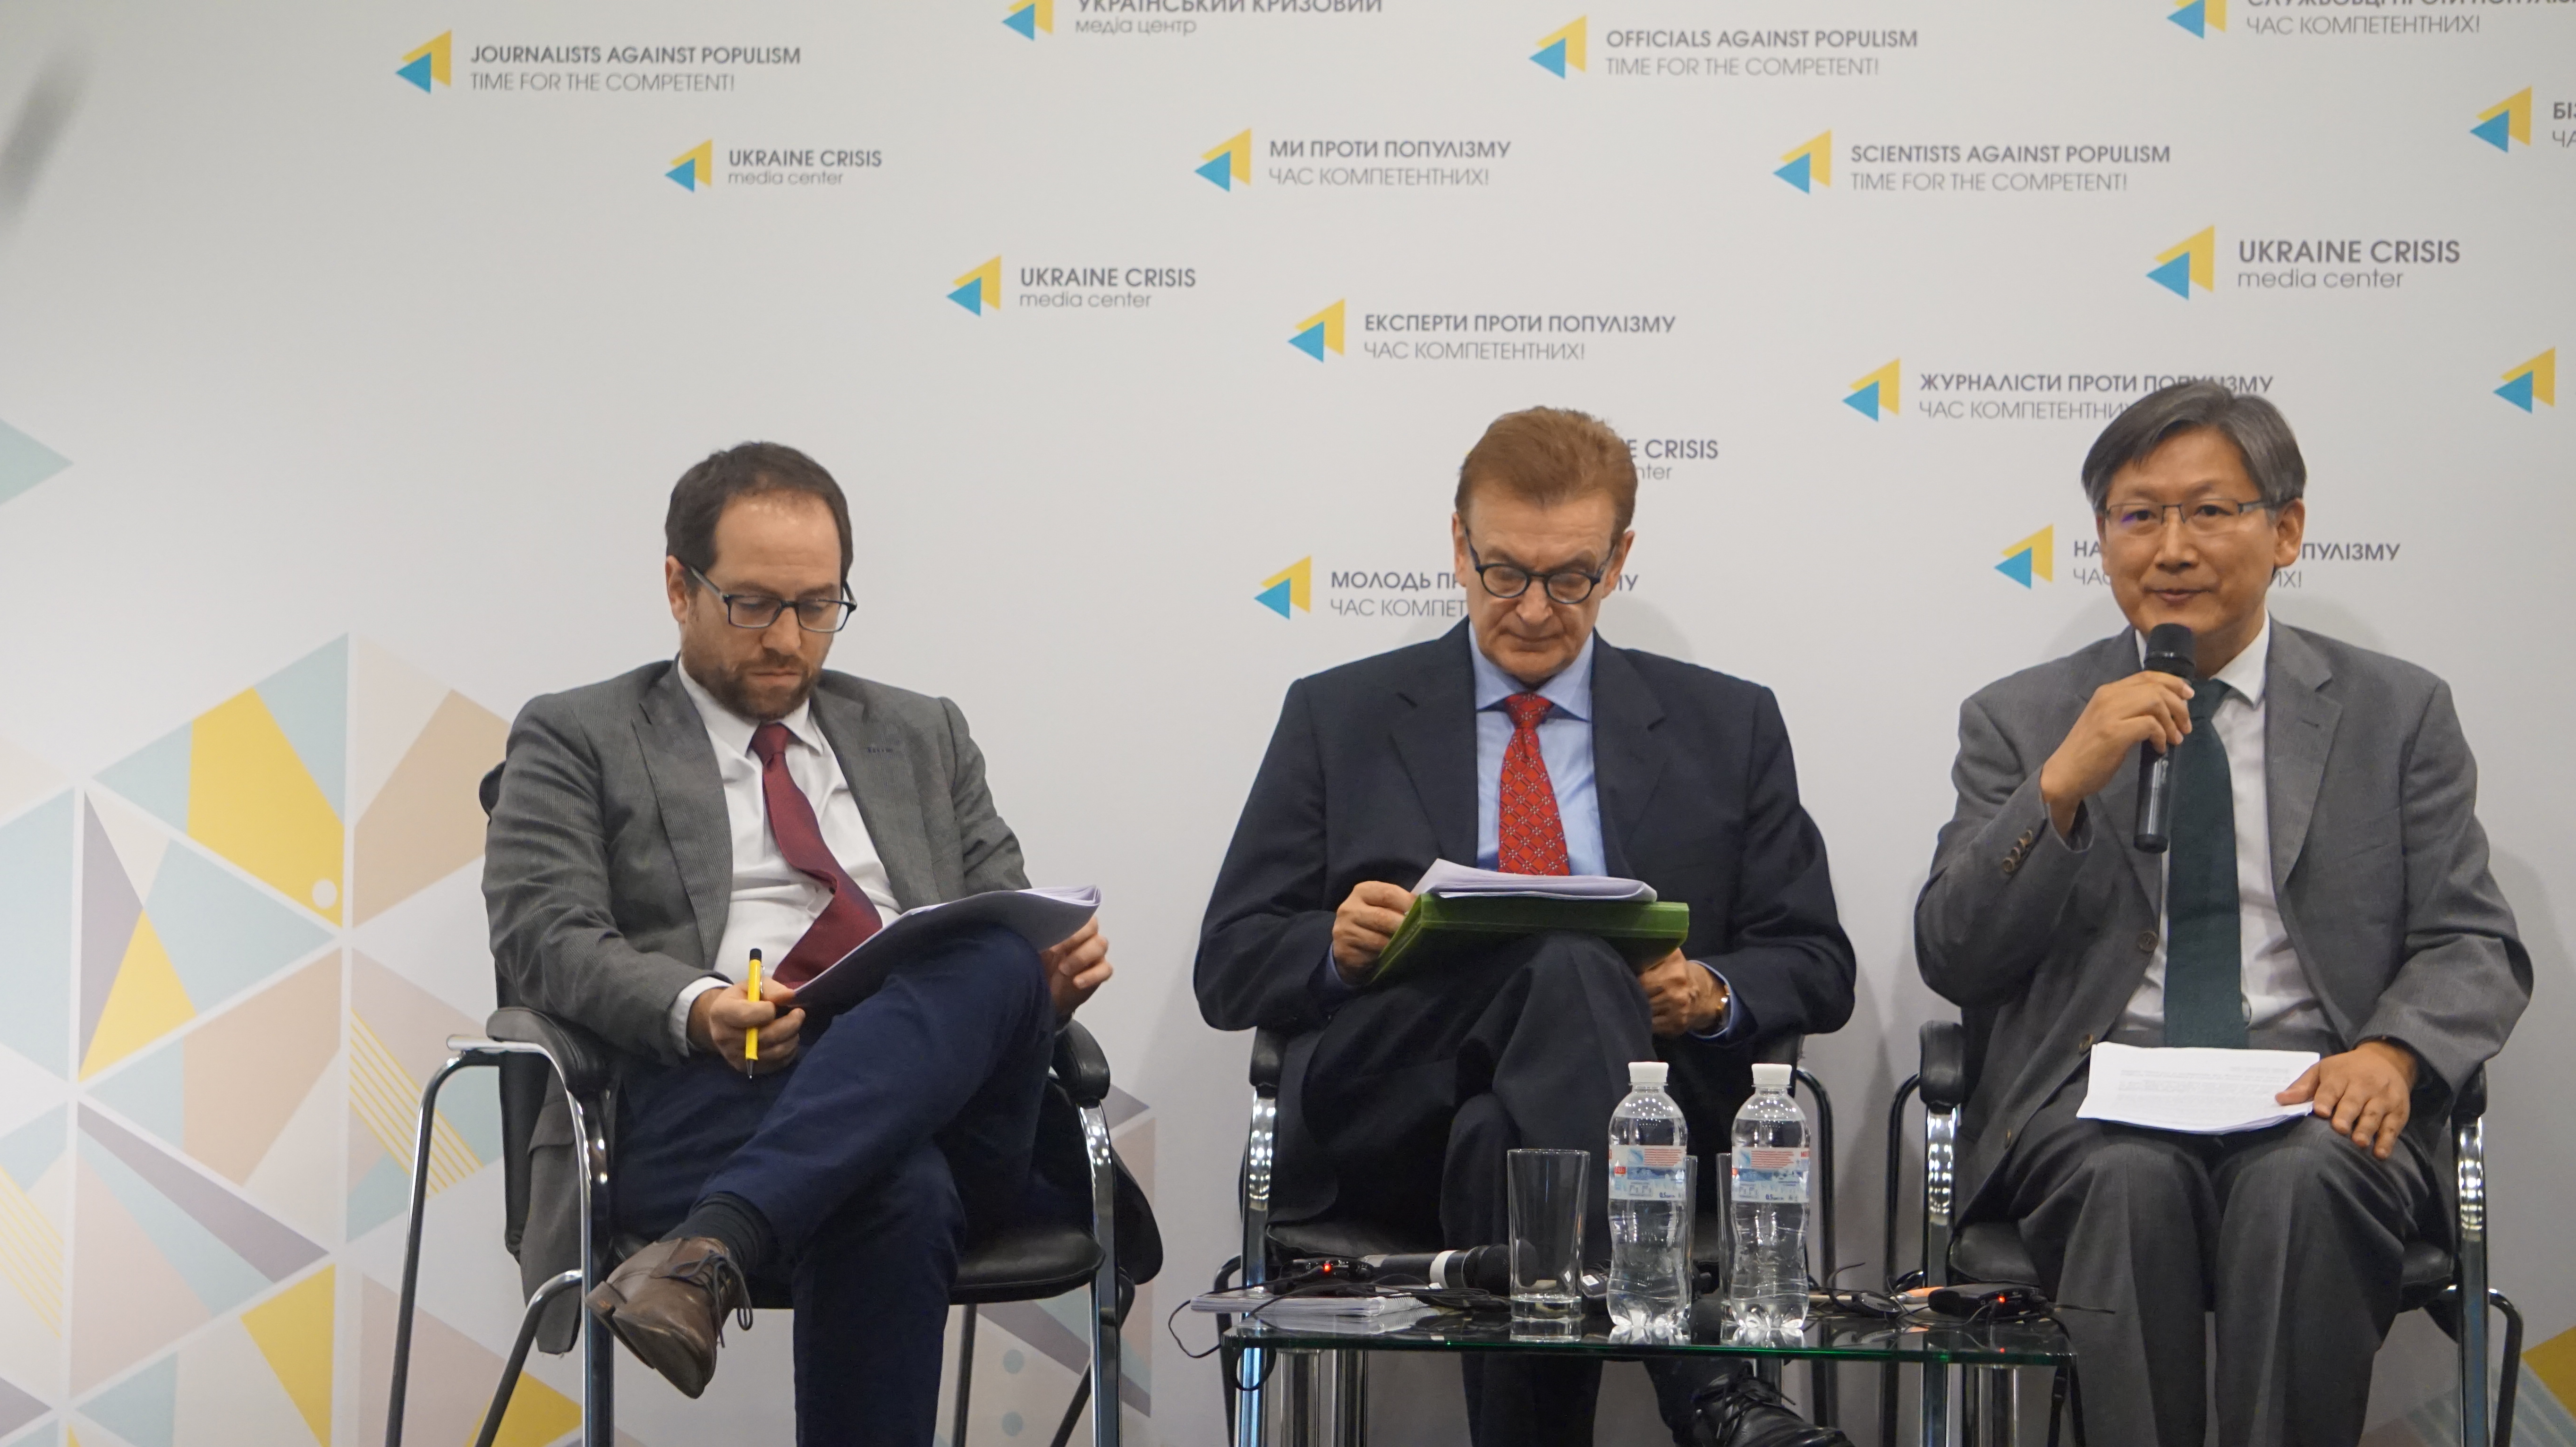 Ситуація з правами людини в Україні: доповідь ООН